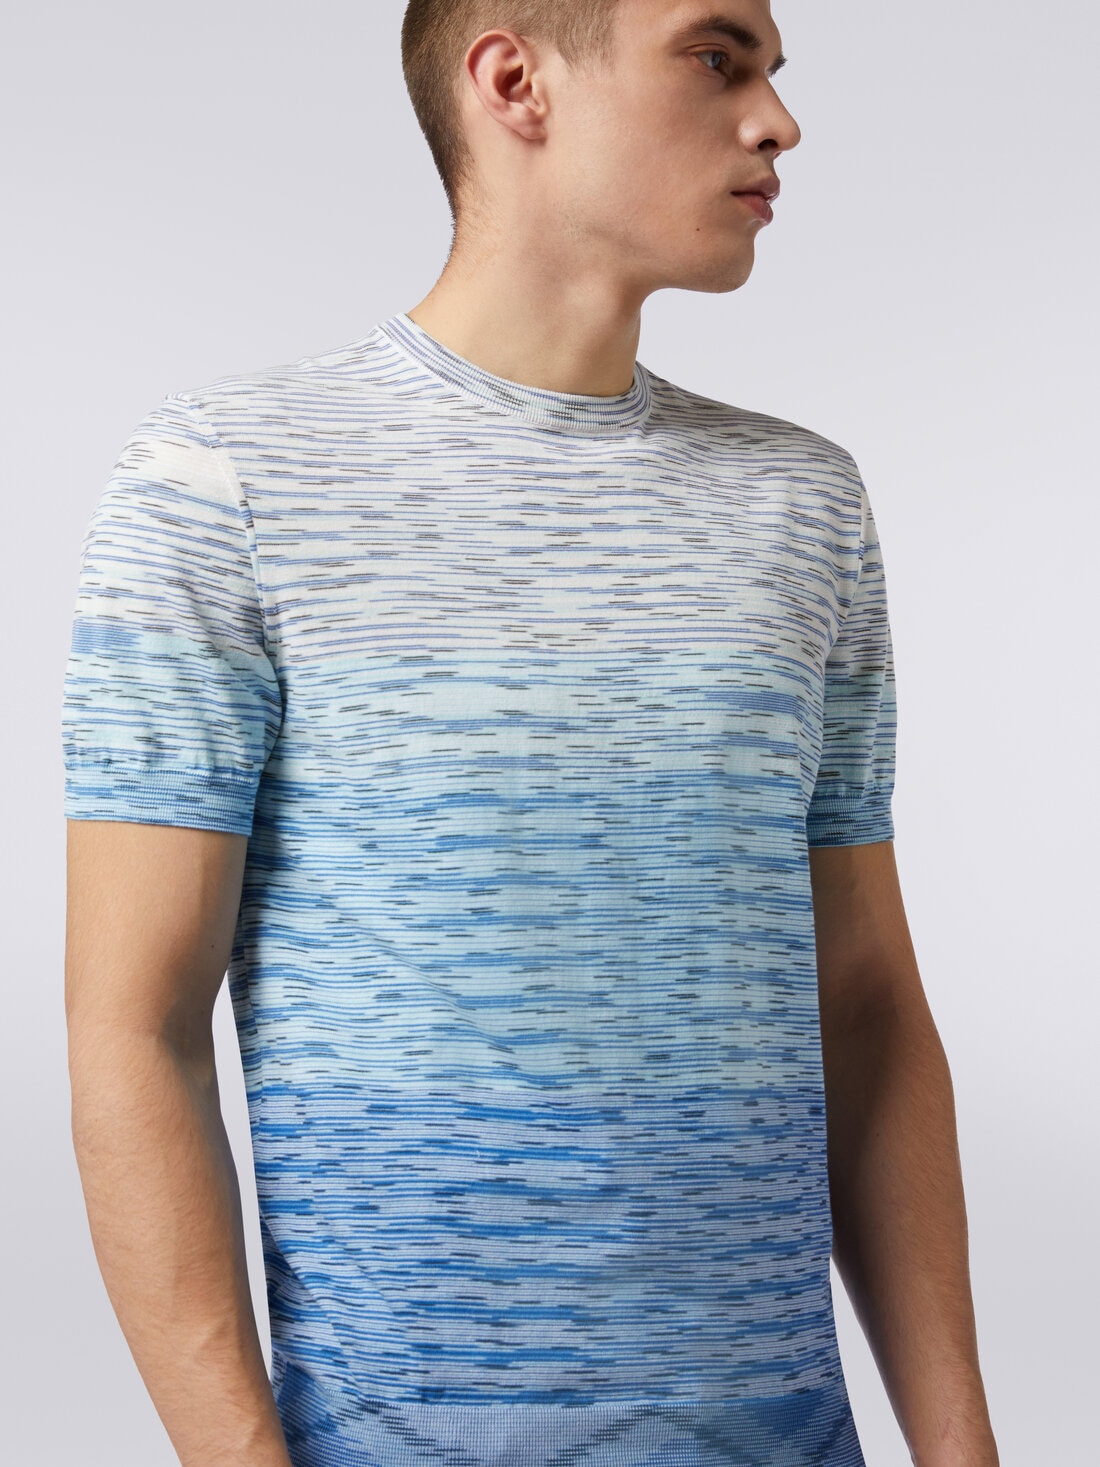 Rundhals-T-Shirt aus Baumwolle in Flammgarnoptik mit Dégradé-Effekt, Mehrfarbig  - US24SL0IBK012QS72F0 - 4